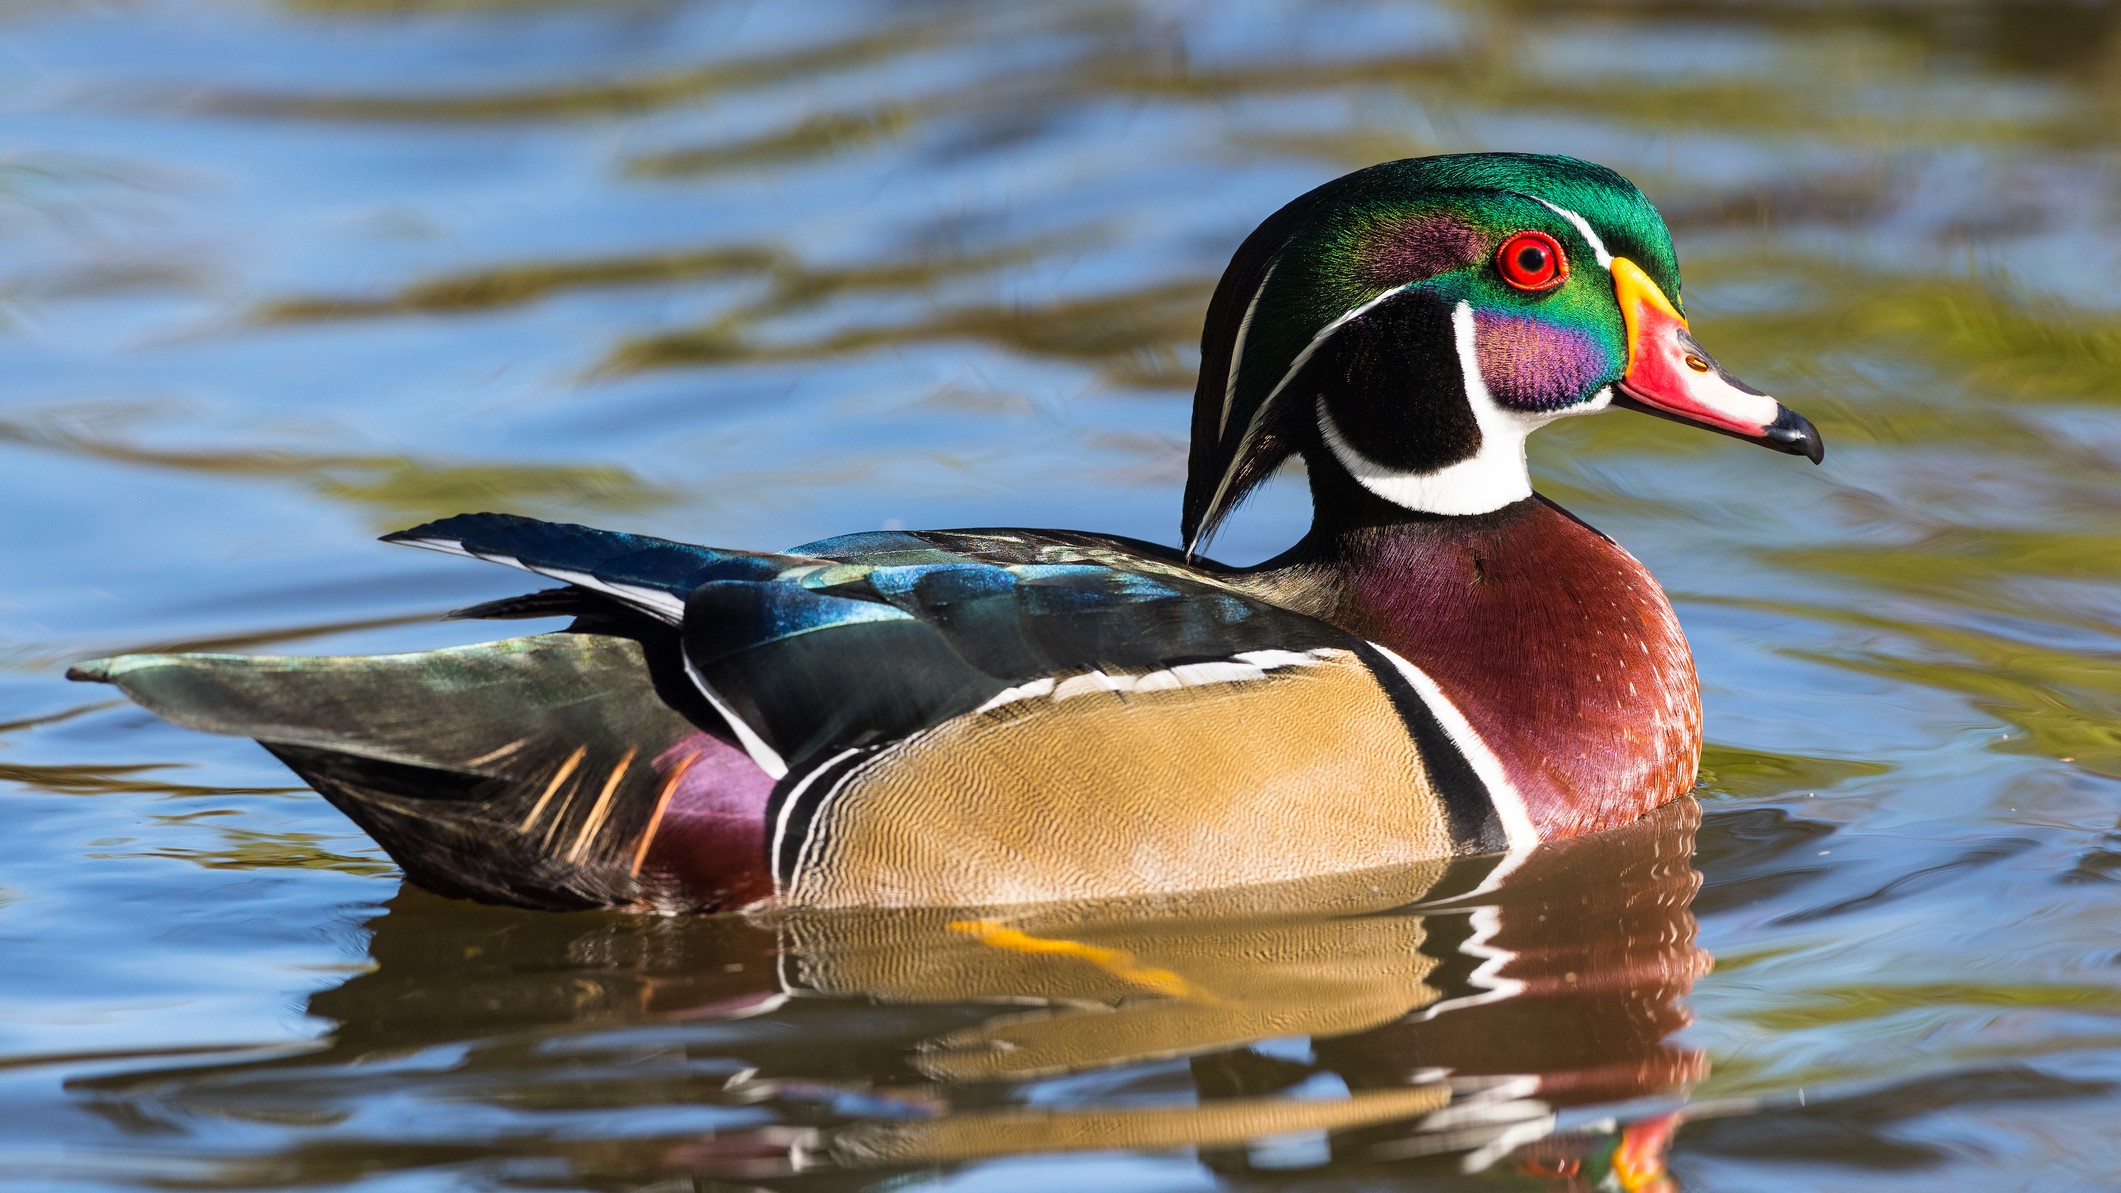 Un mascul de rață de lemn care înoată în apă cu penele sale colorate reflectate.